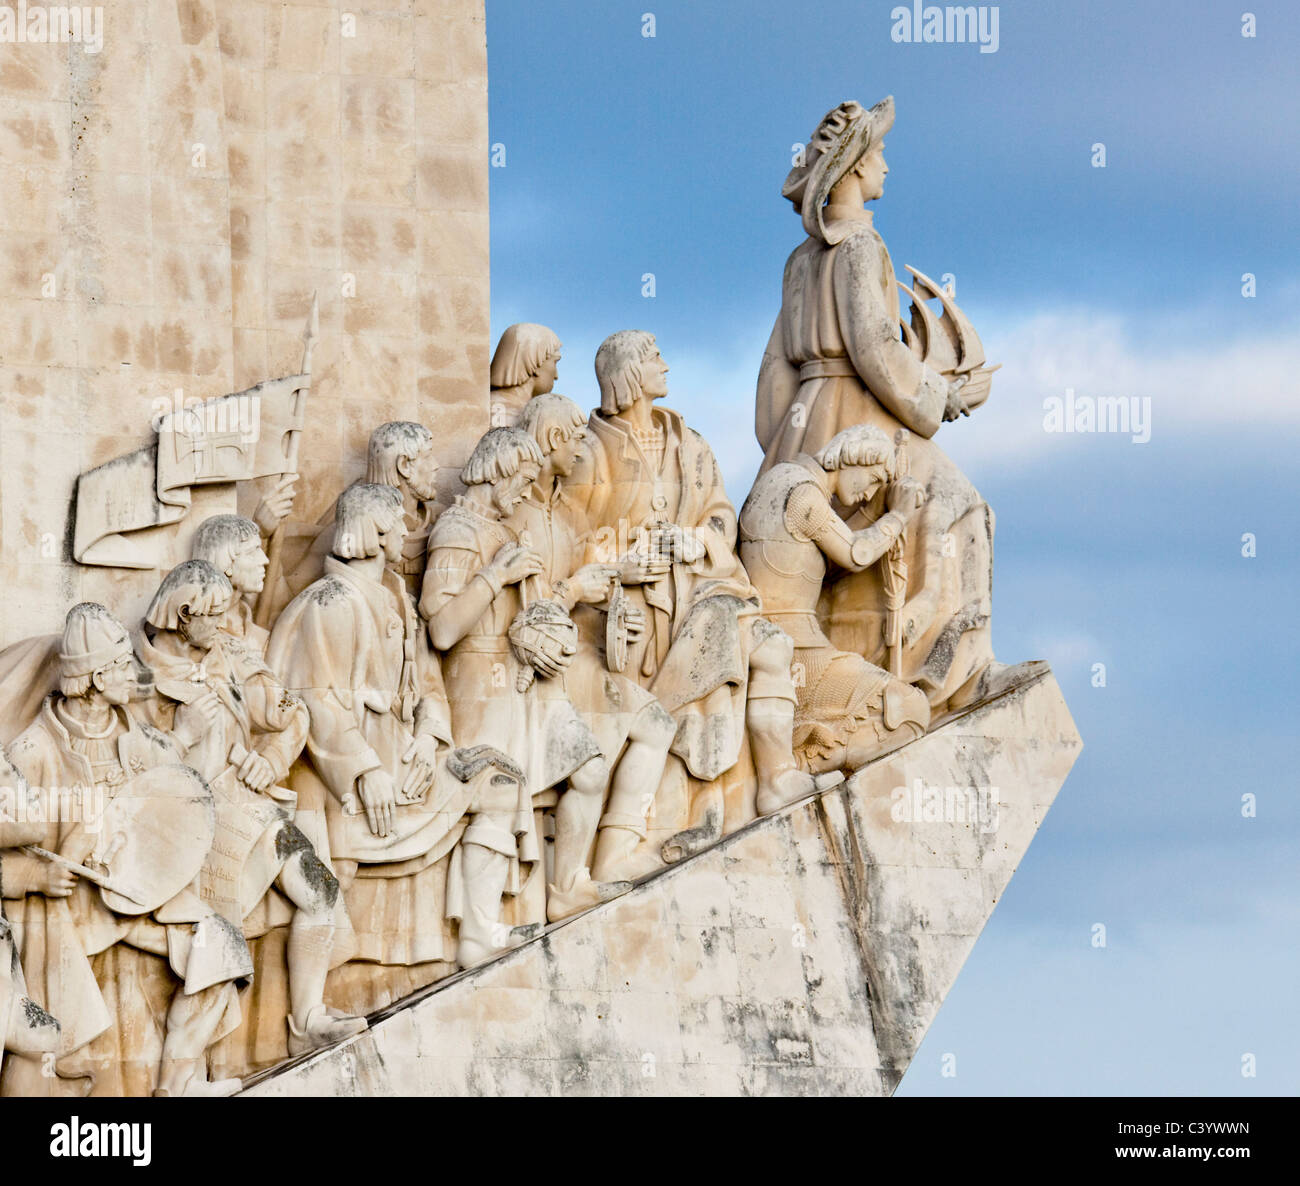 Portugal, Europa, Lisboa, descubridor monumento, el detalle, el arte, la habilidad, plástico Foto de stock